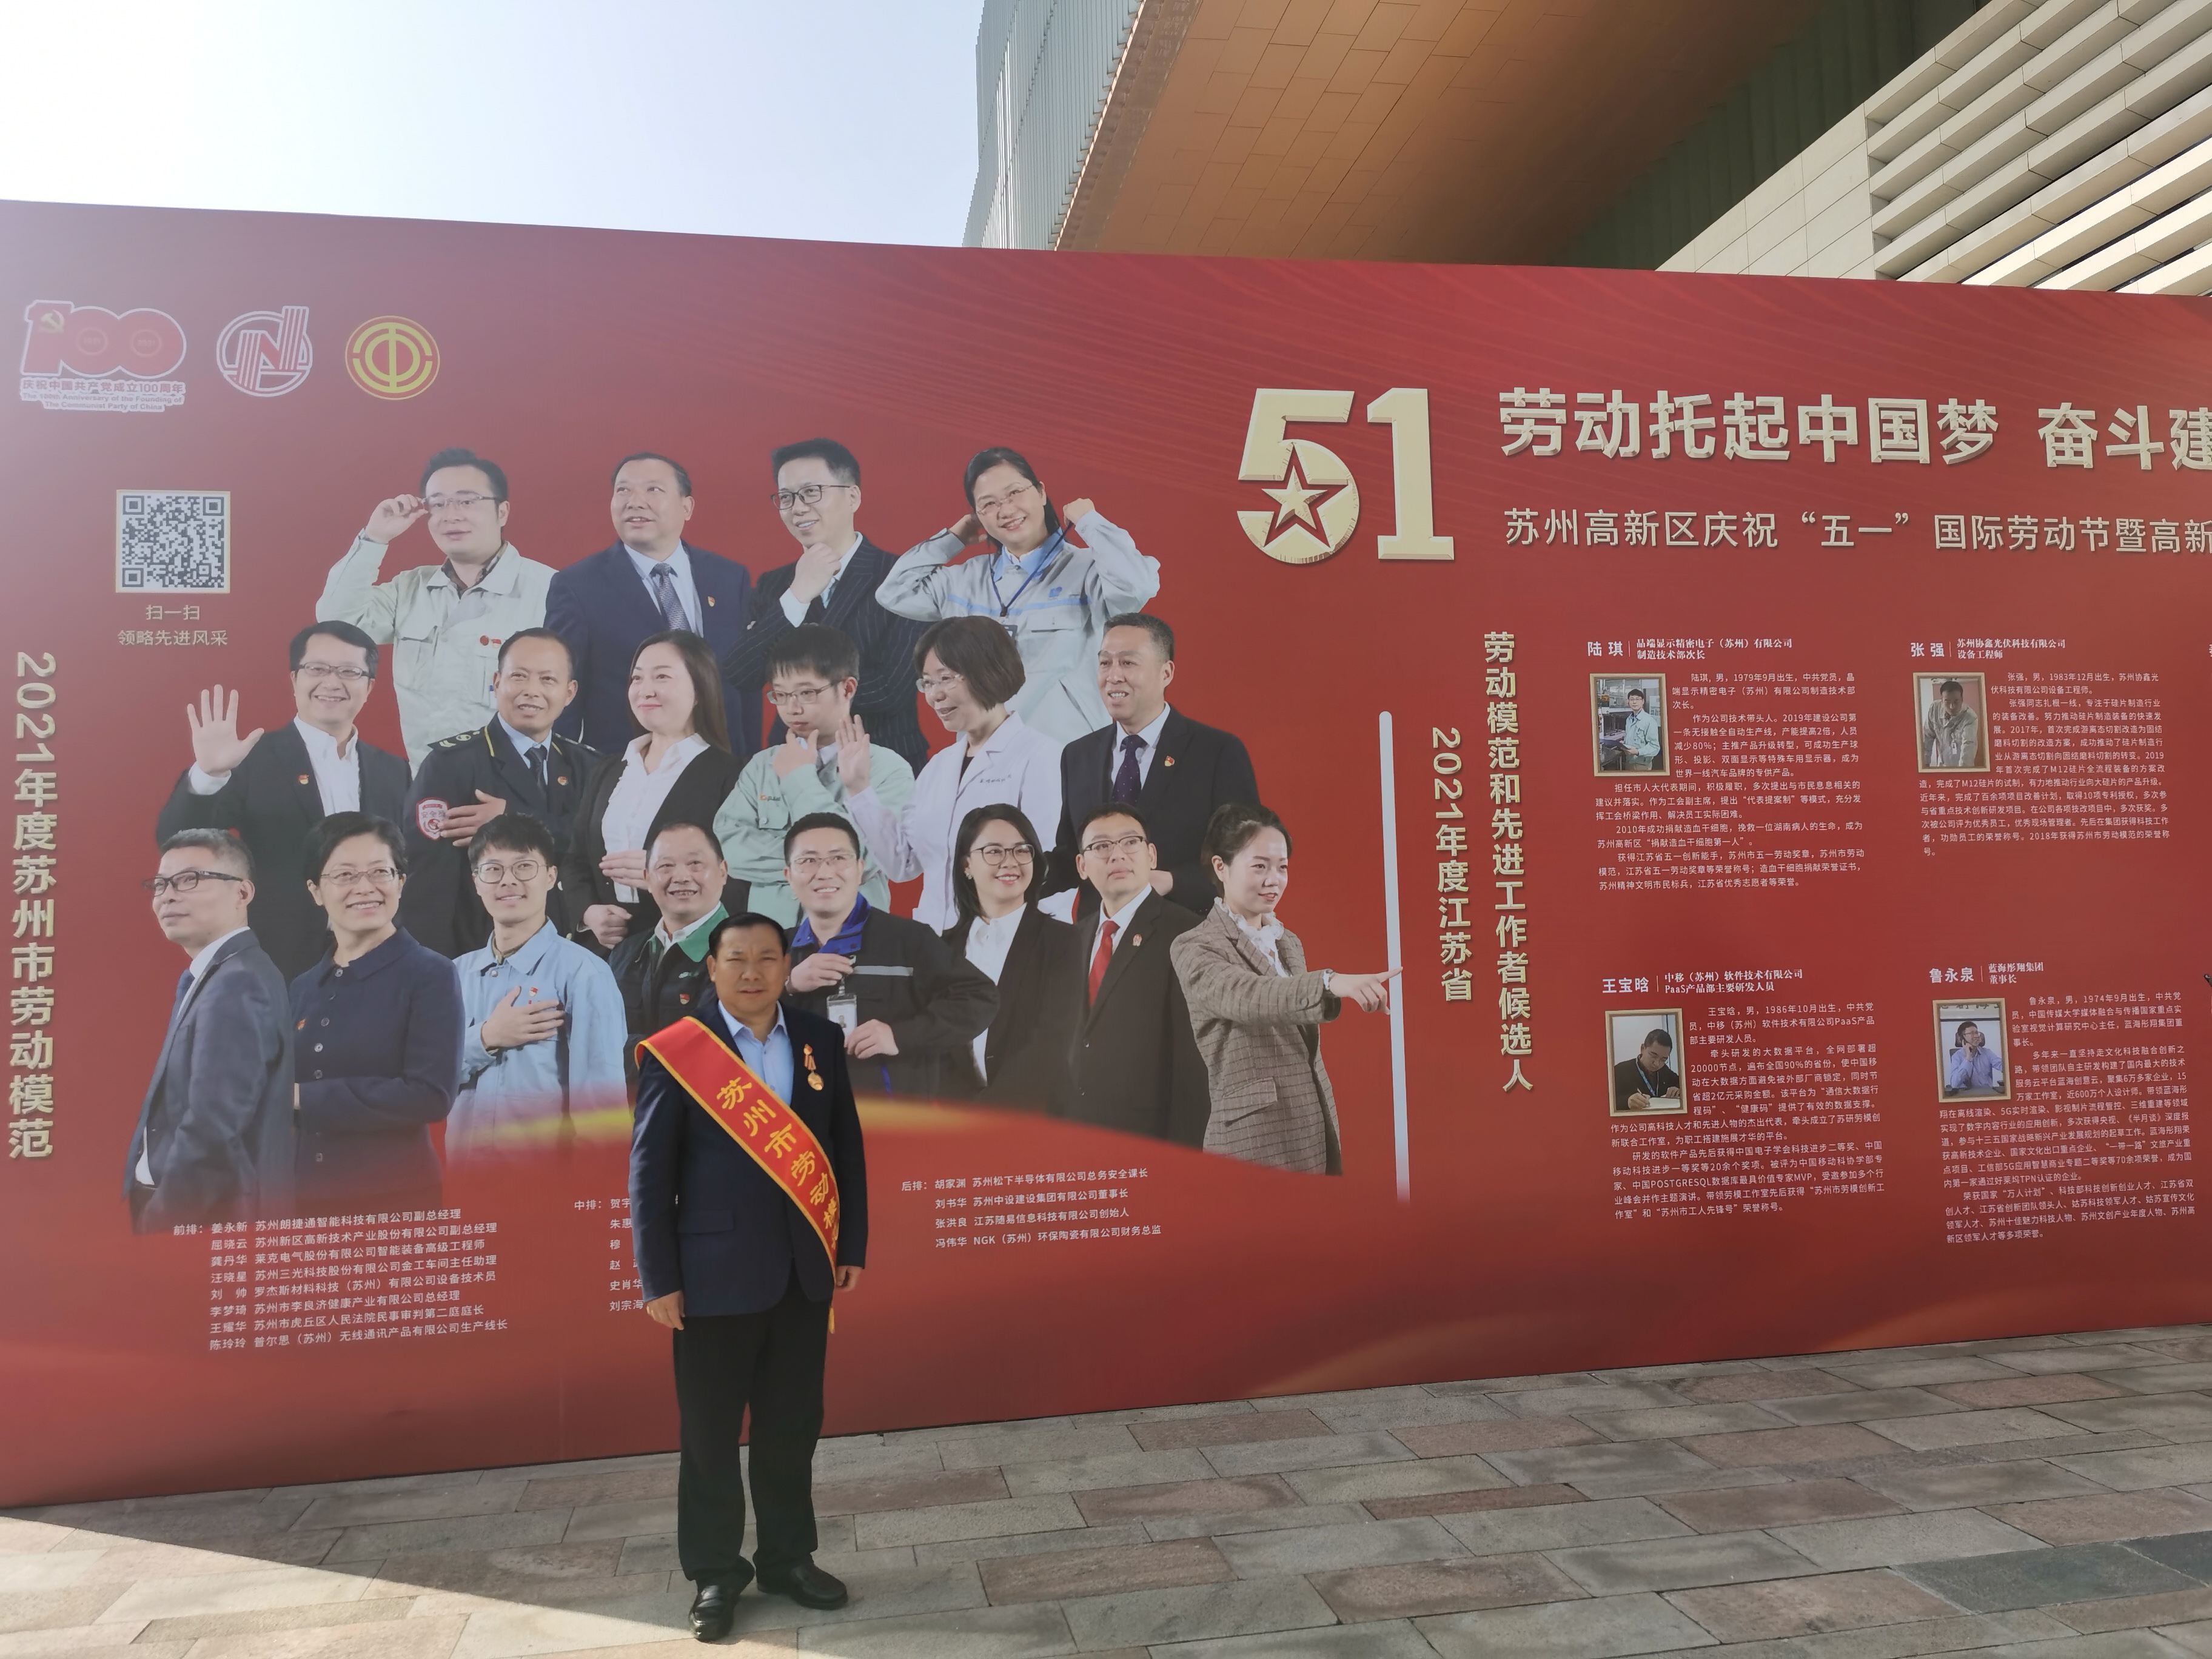 刘书华董事长荣获“苏州市劳动模范”称号